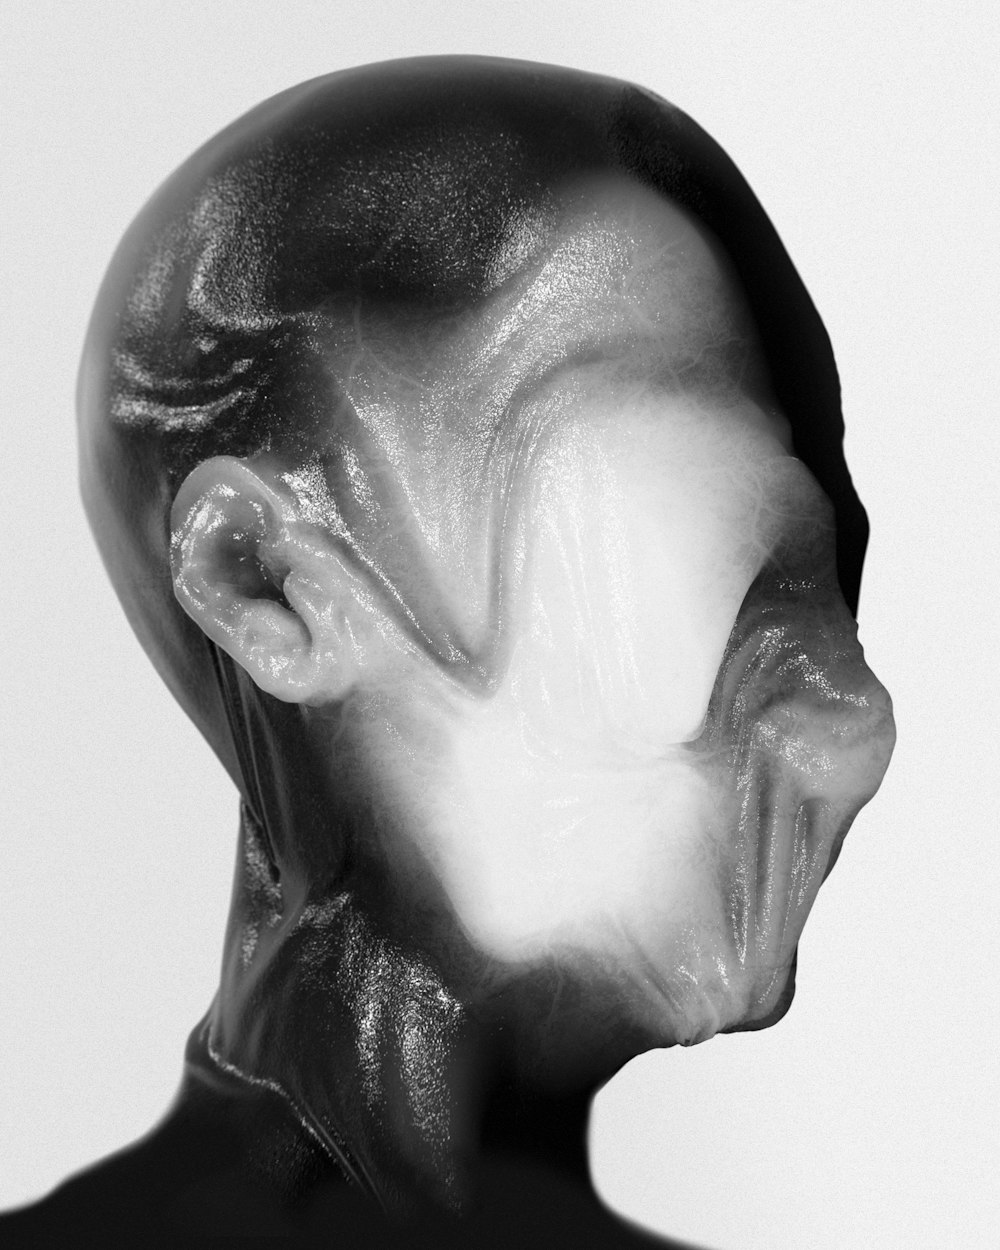 Una foto in bianco e nero della testa di un uomo